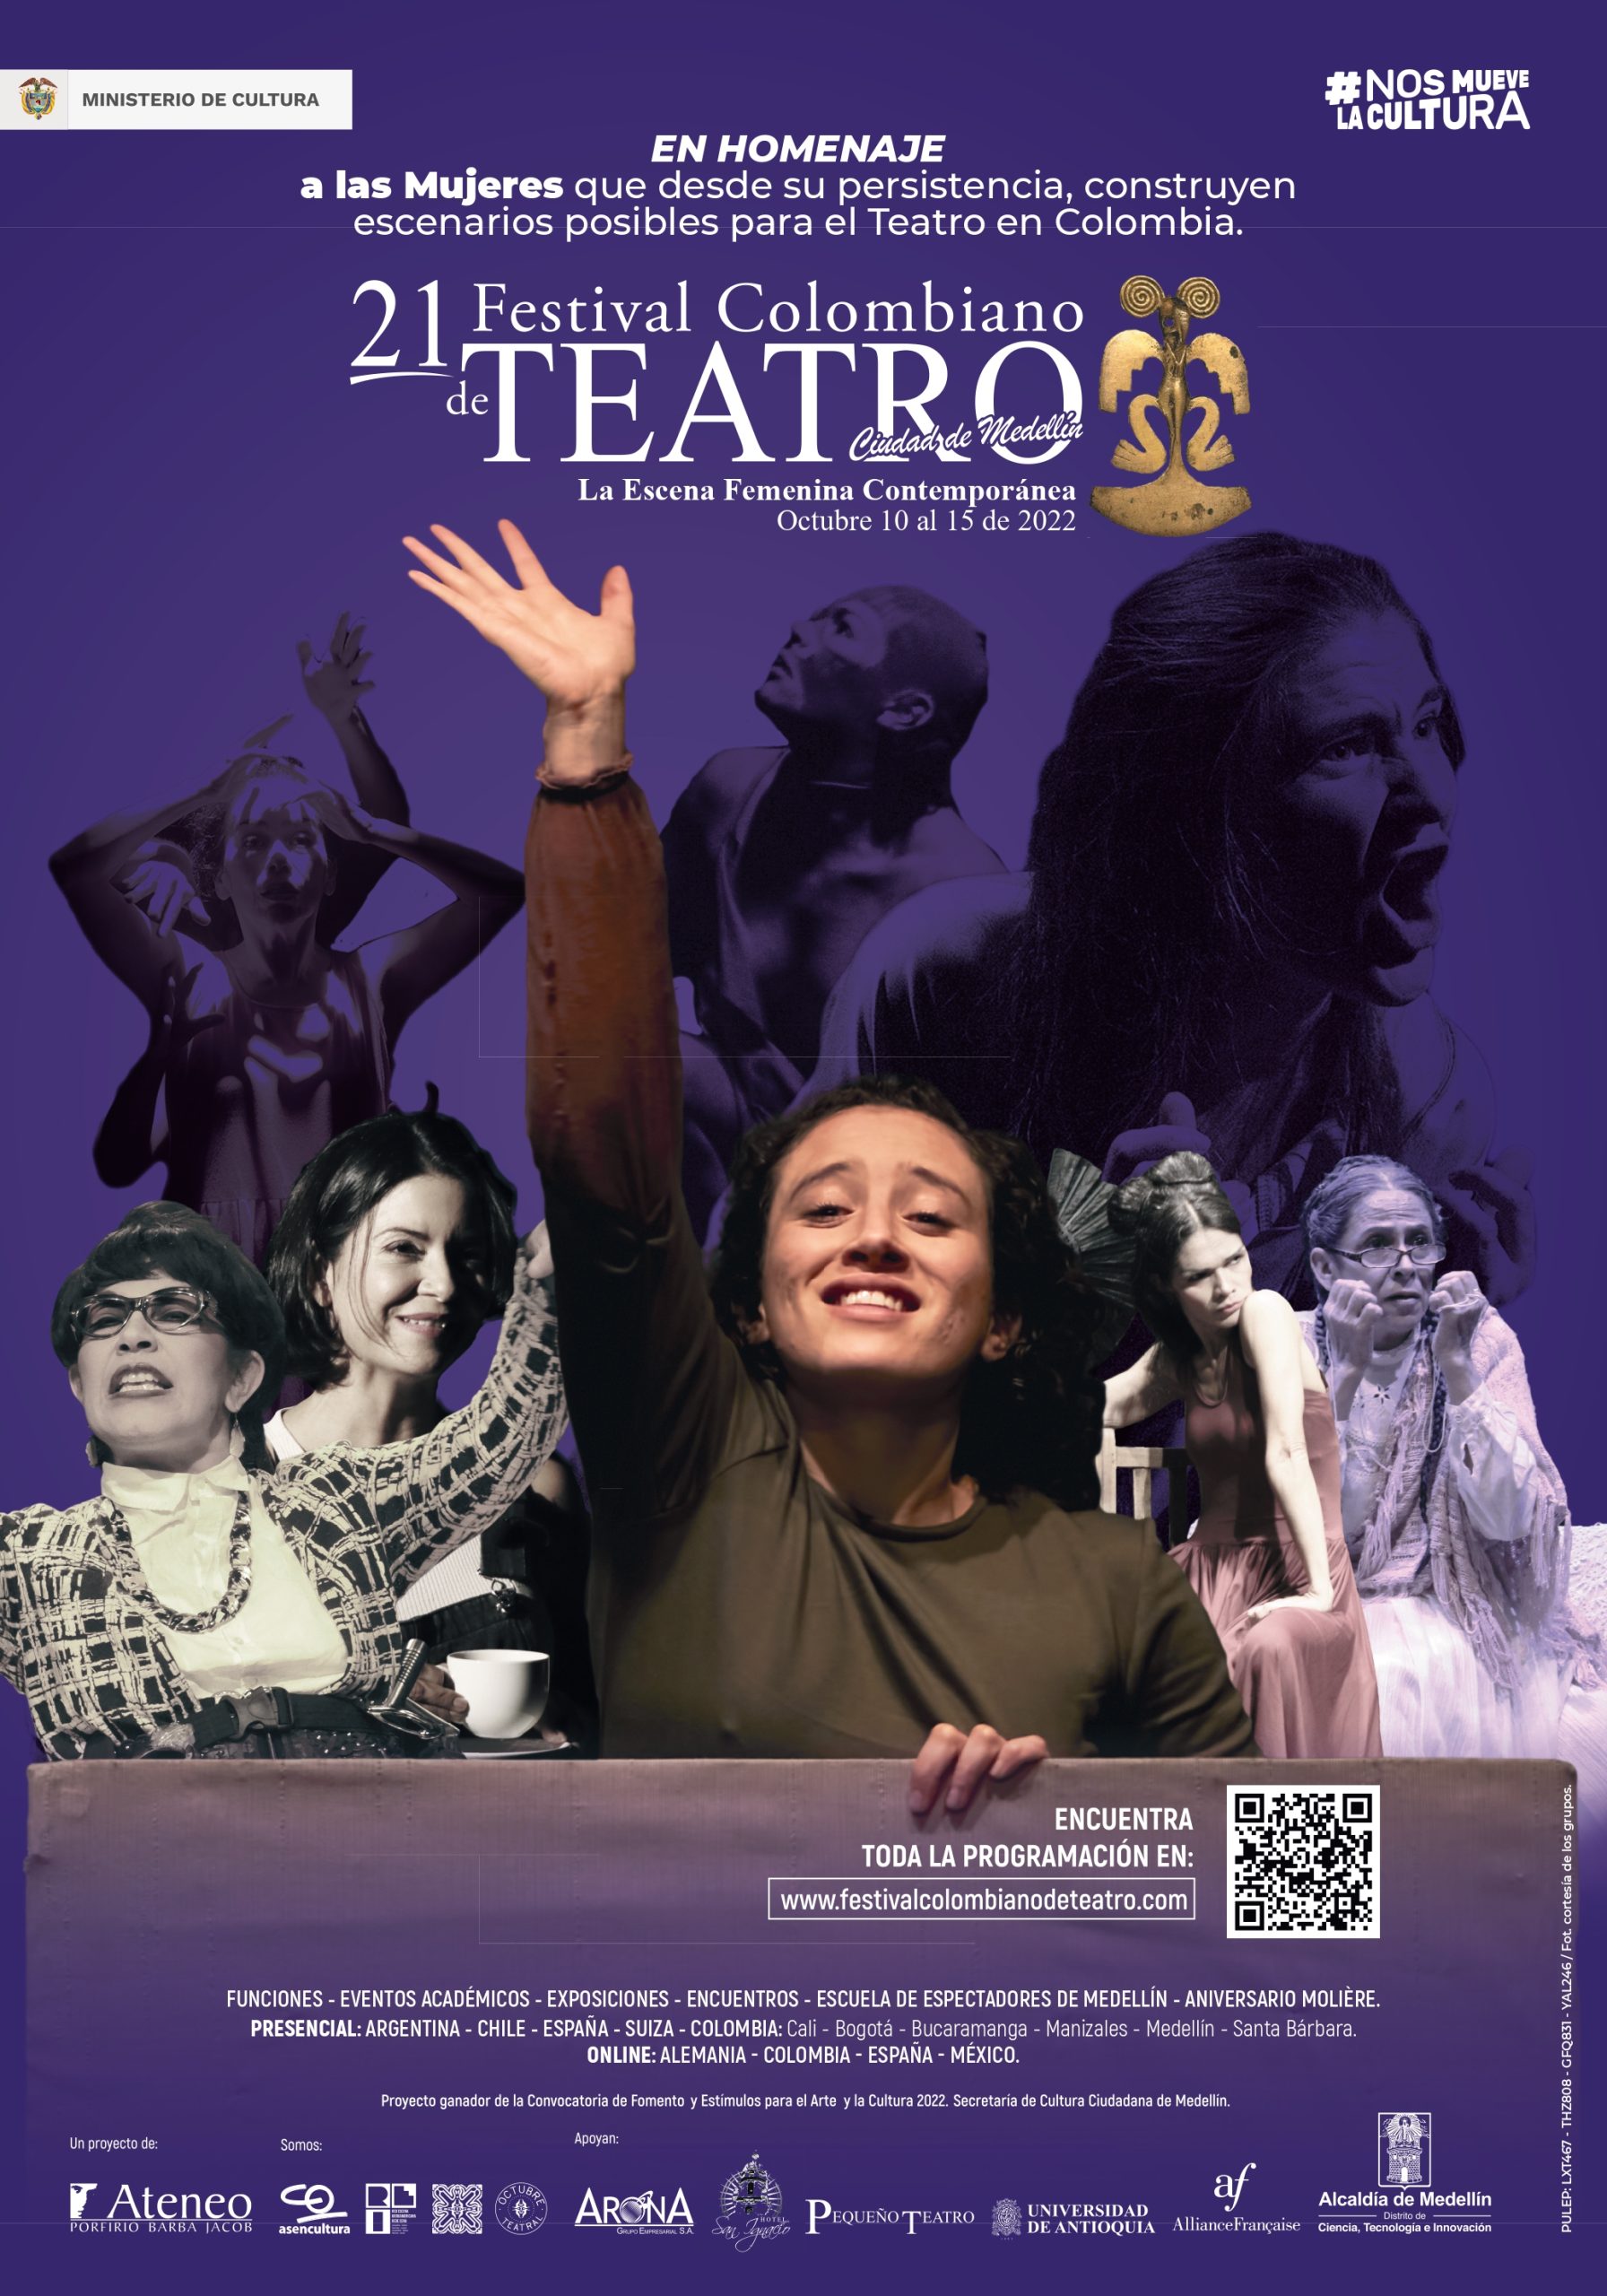 Festival Colombiano de Teatro rinde homenaje a la escena femenina contemporánea